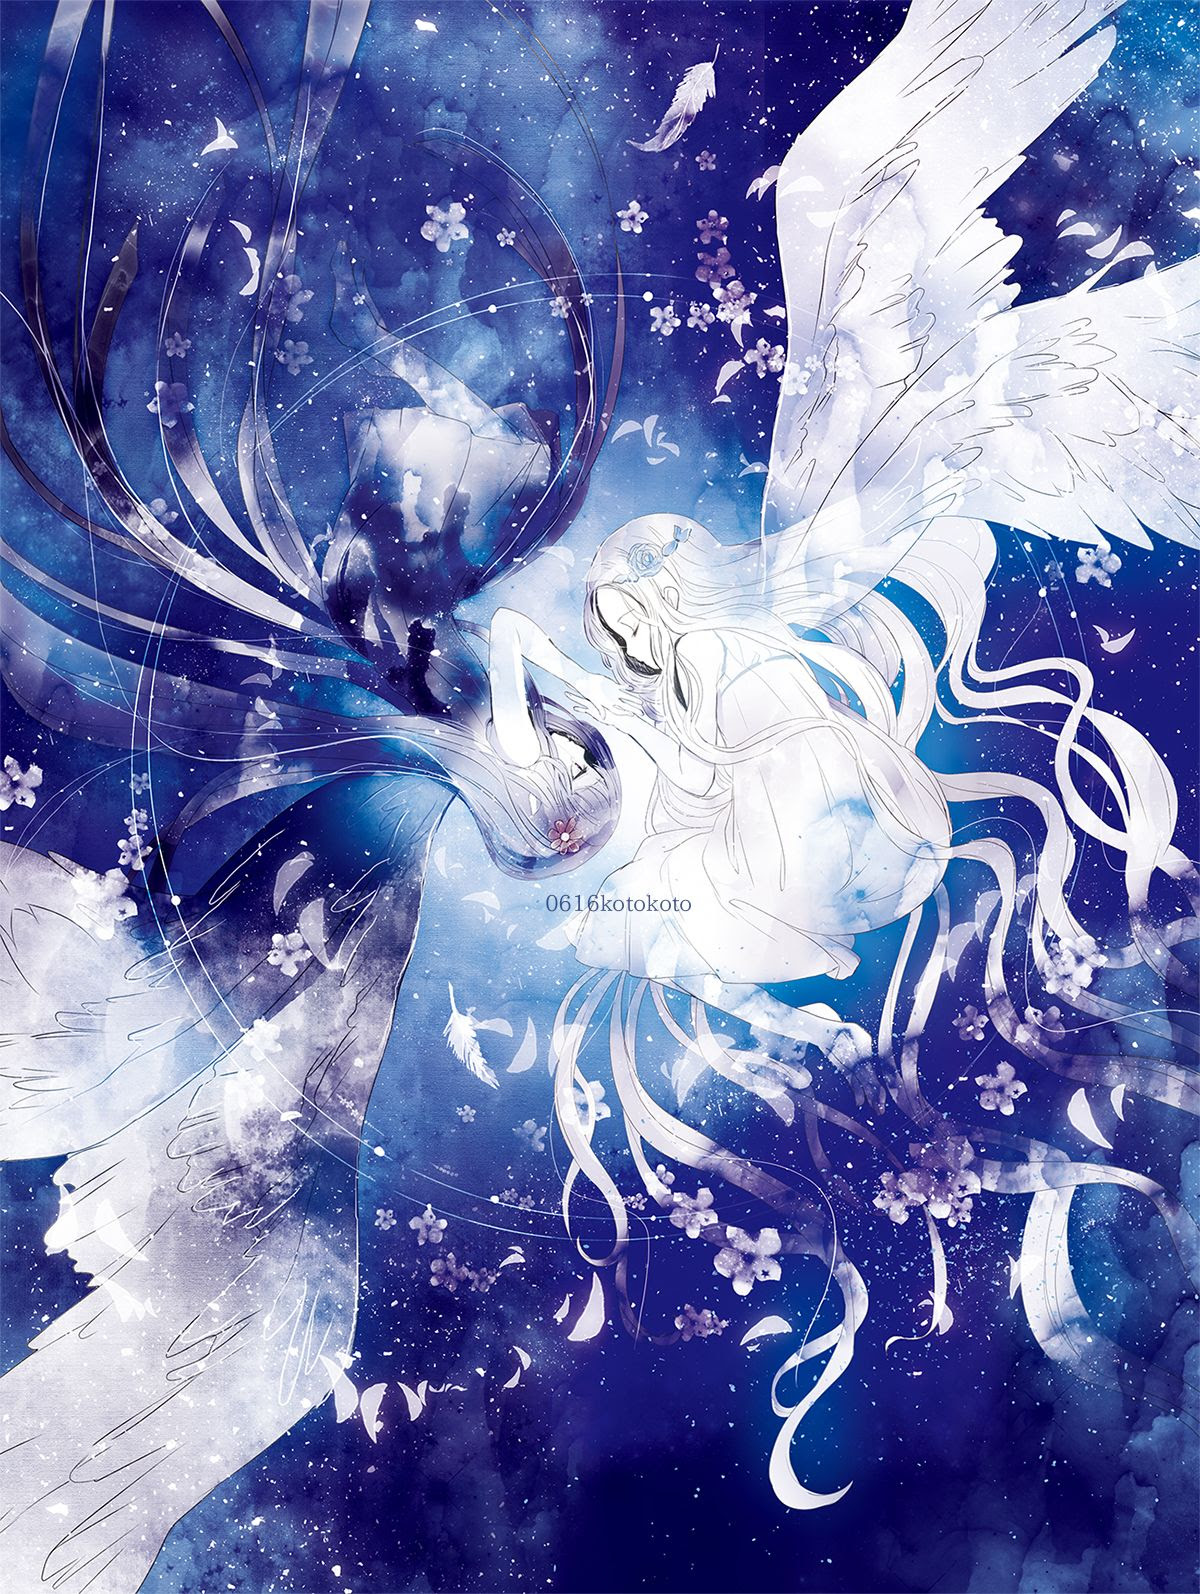 25 美しい 天使 可愛い イラスト 壁紙画像トップ無料